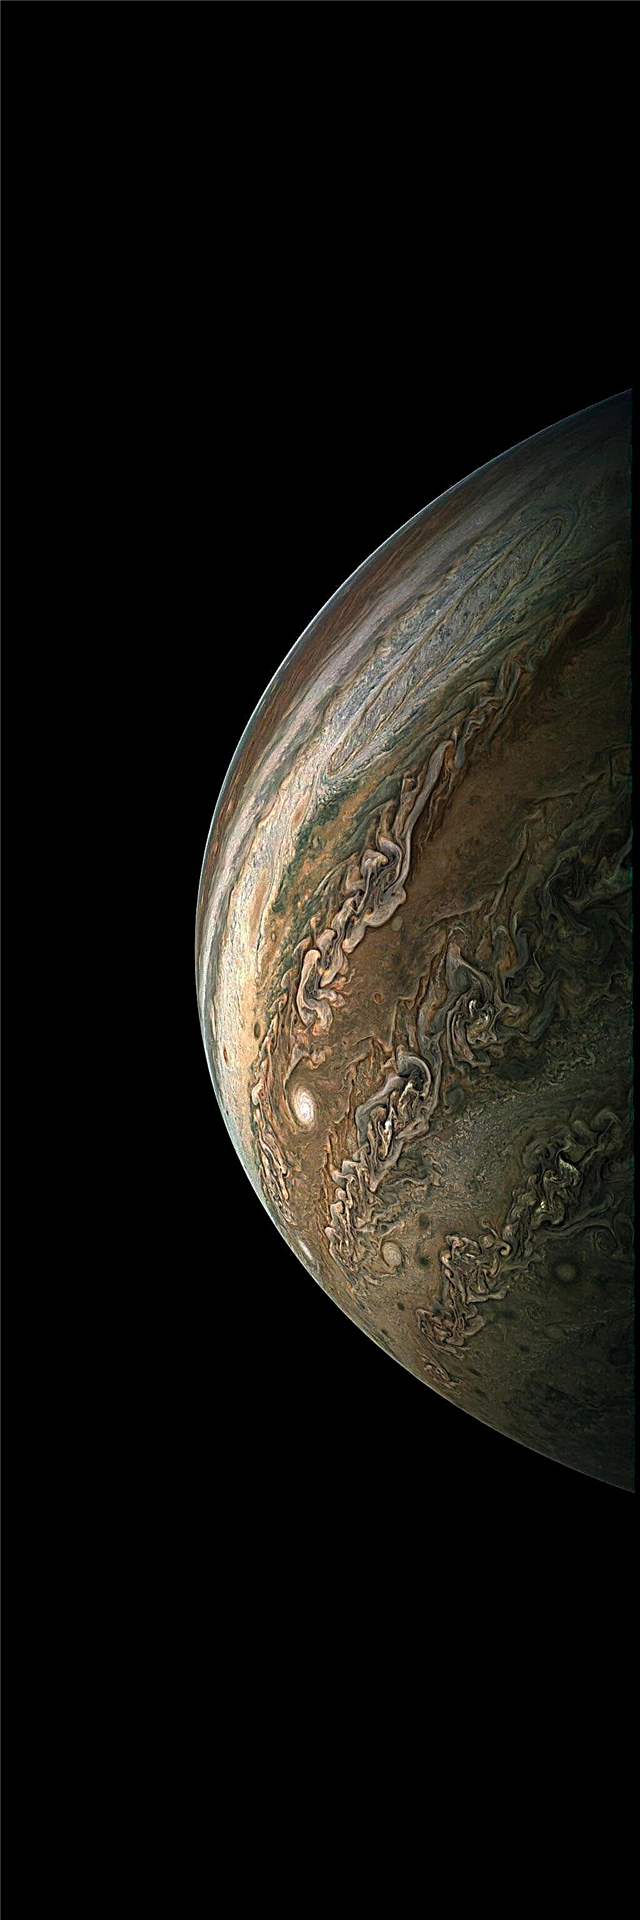 Juno Probe completa el décimo sobrevuelo científico de Júpiter; Los ciudadanos producen imágenes asombrosas